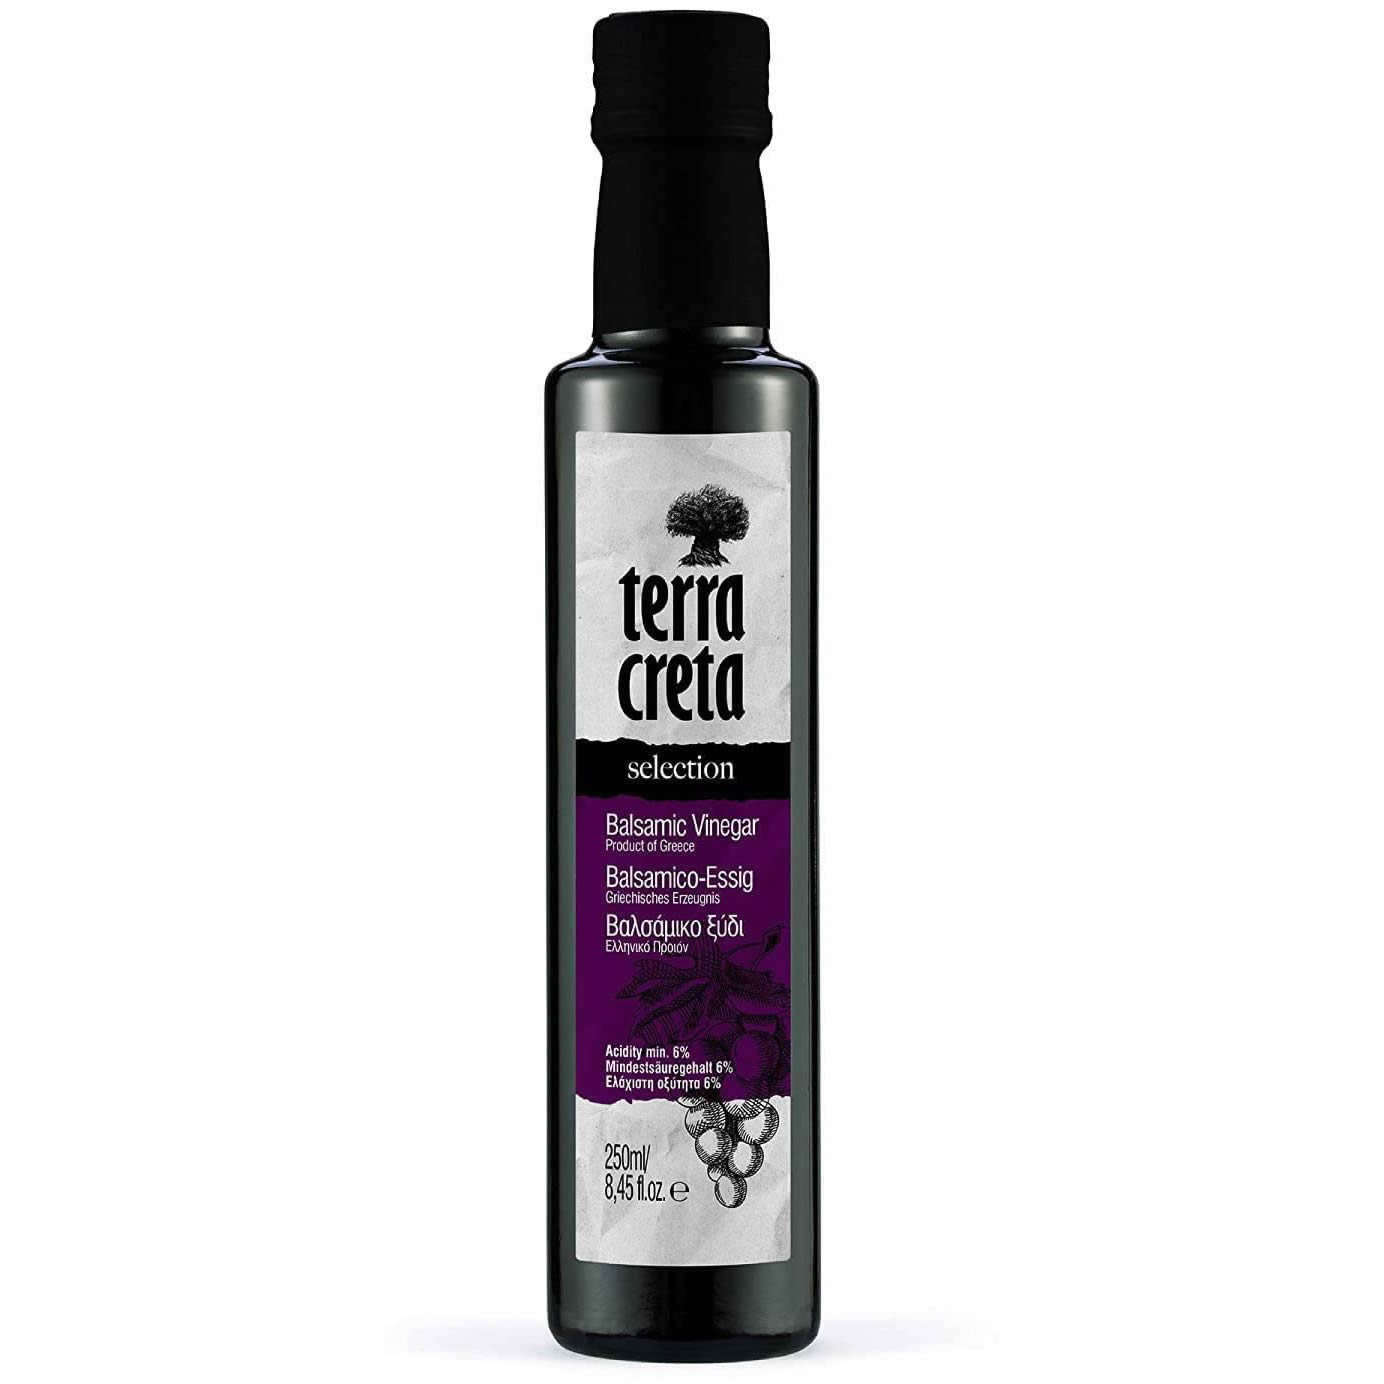 Terra Creta - Balsamico-Essig aus Rotwein in Dorica 250 ml